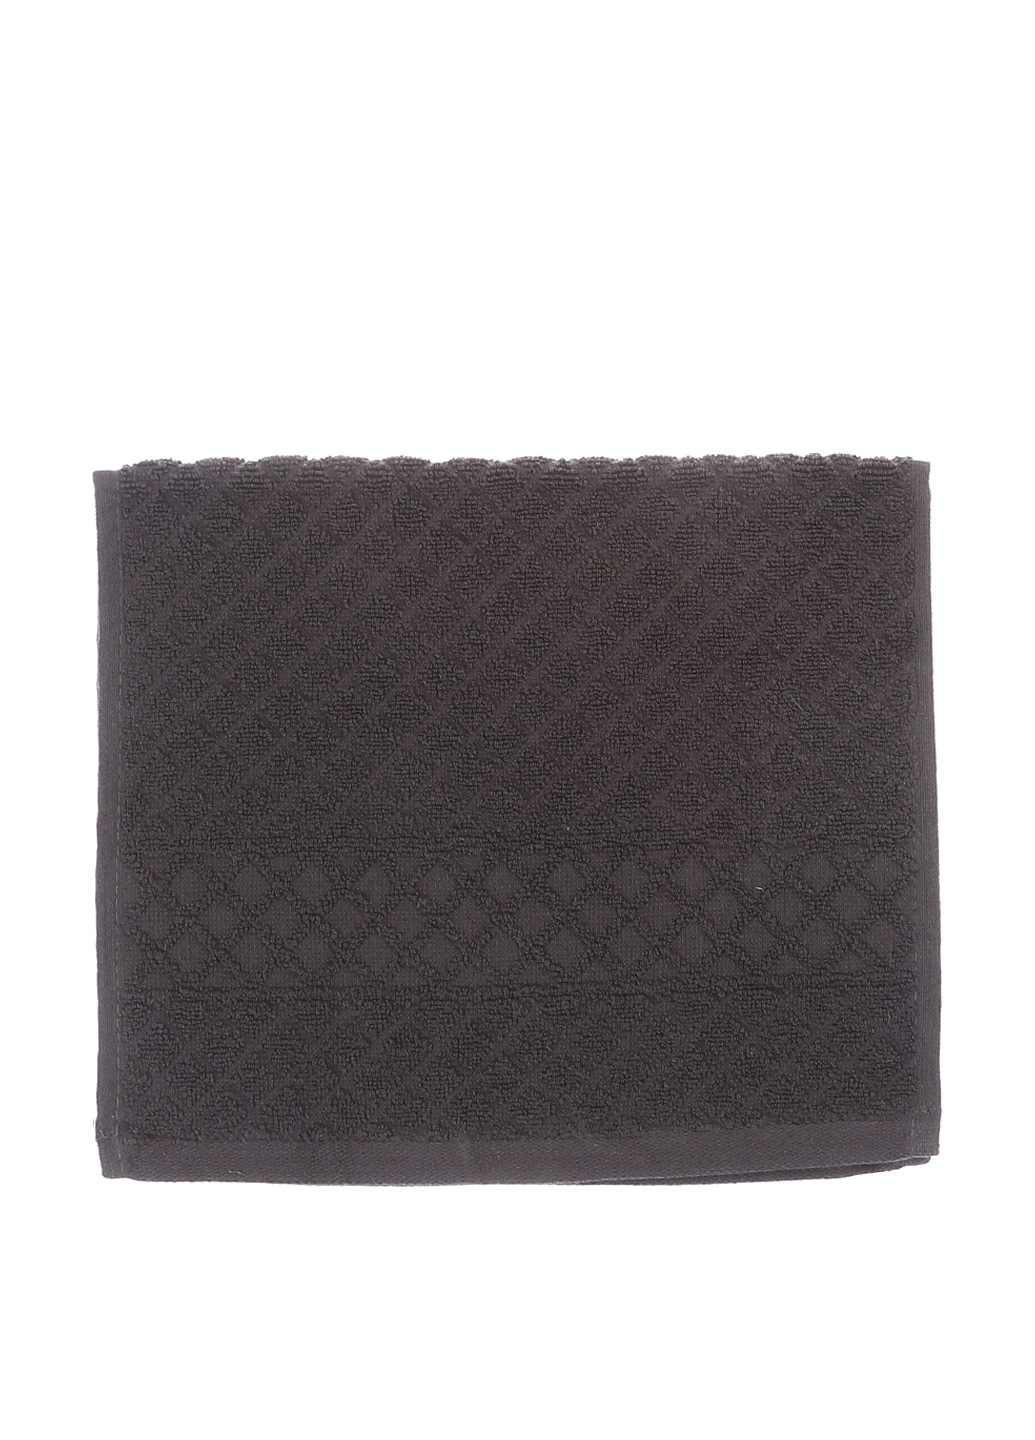 Lidl полотенце, 30х50 см геометрический темно-серый производство - Пакистан